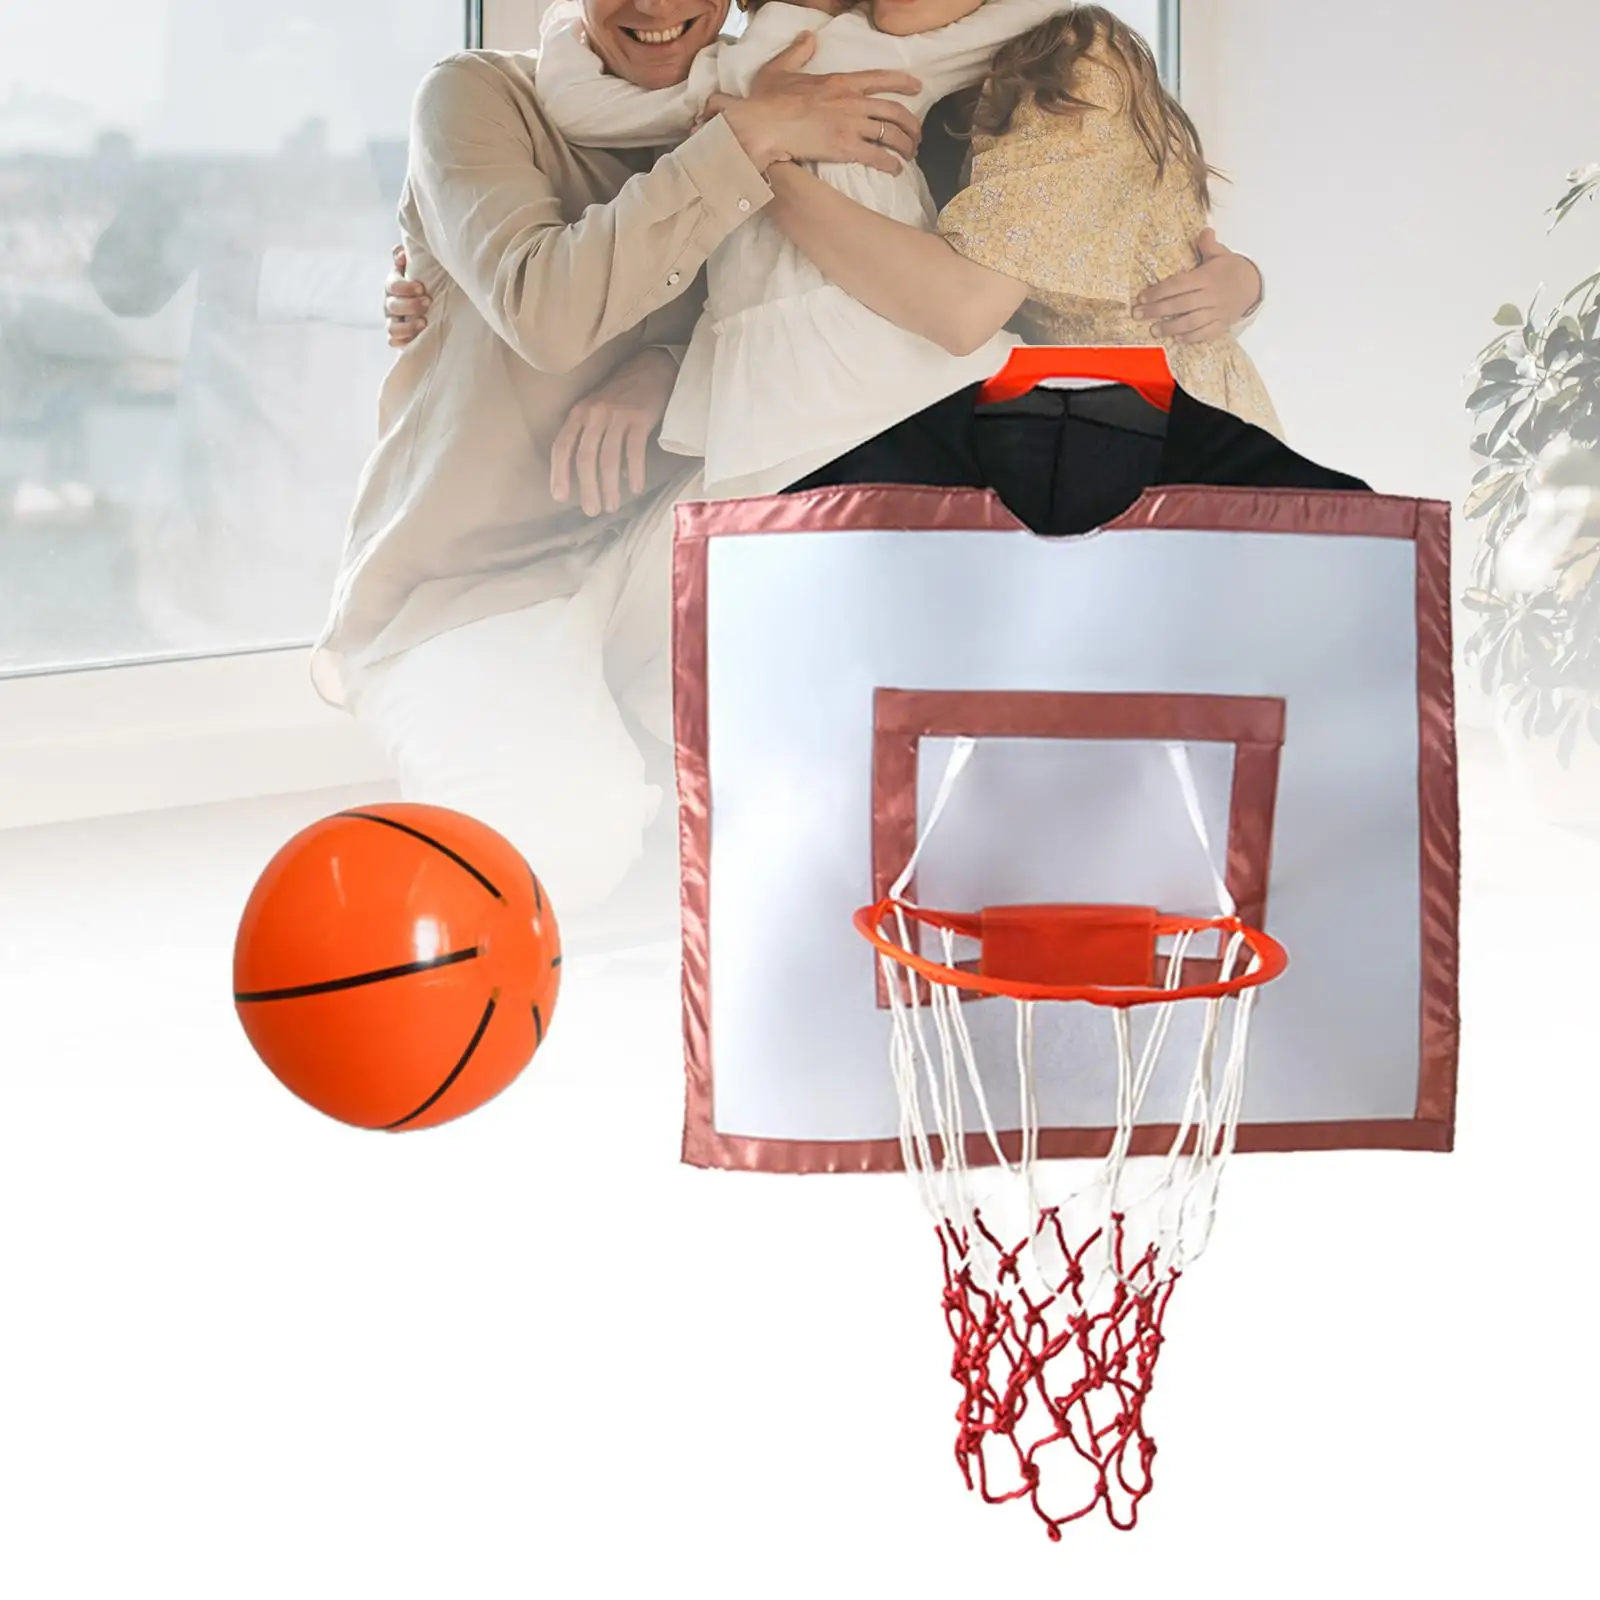 Wearable Basketball Hoop Costumes Indoor Outdoor Clothing Accessories Basketball Rim for Kindergarten Boy Family Activities